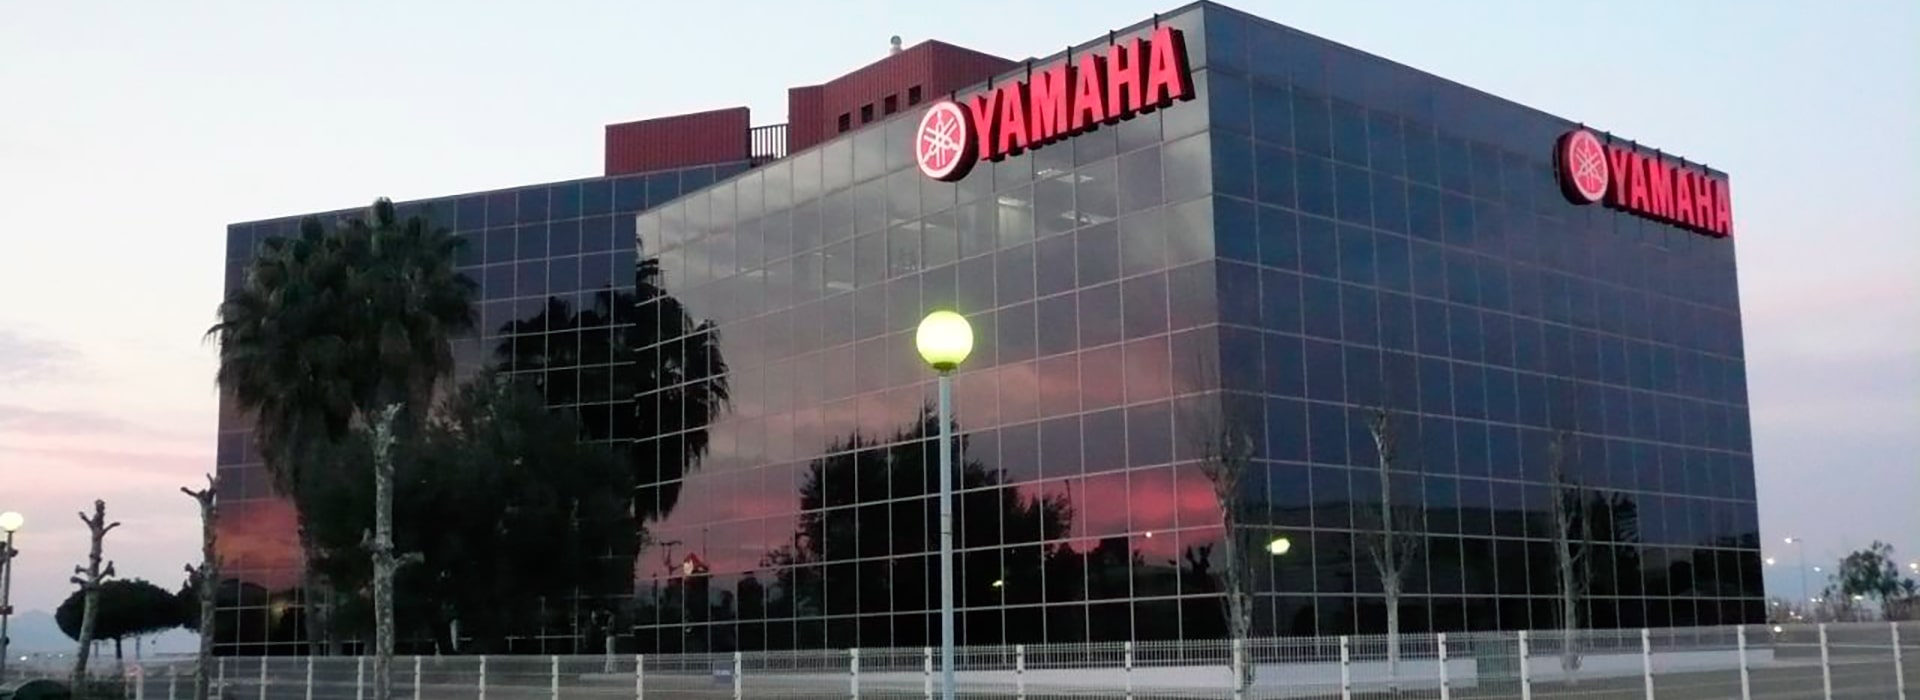 Taller para motos Yamaha en Sevilla